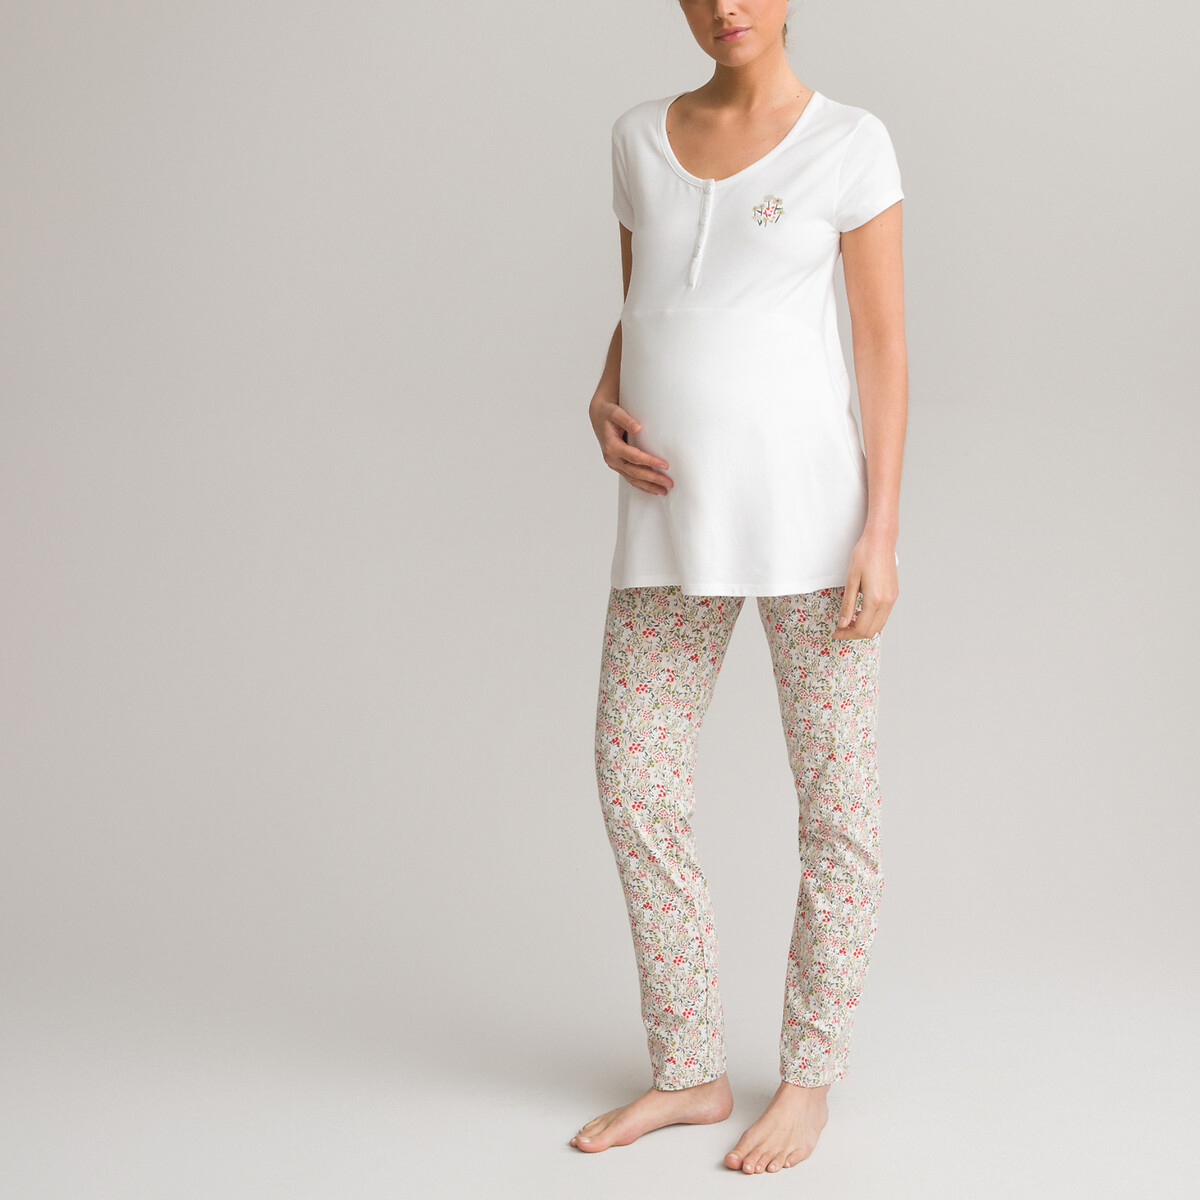 Пижама LA REDOUTE COLLECTIONS Для периода беременности с короткими рукавами из джерси 50/52 (FR) - 56/58 (RUS) разноцветный, размер 50/52 (FR) - 56/58 (RUS)